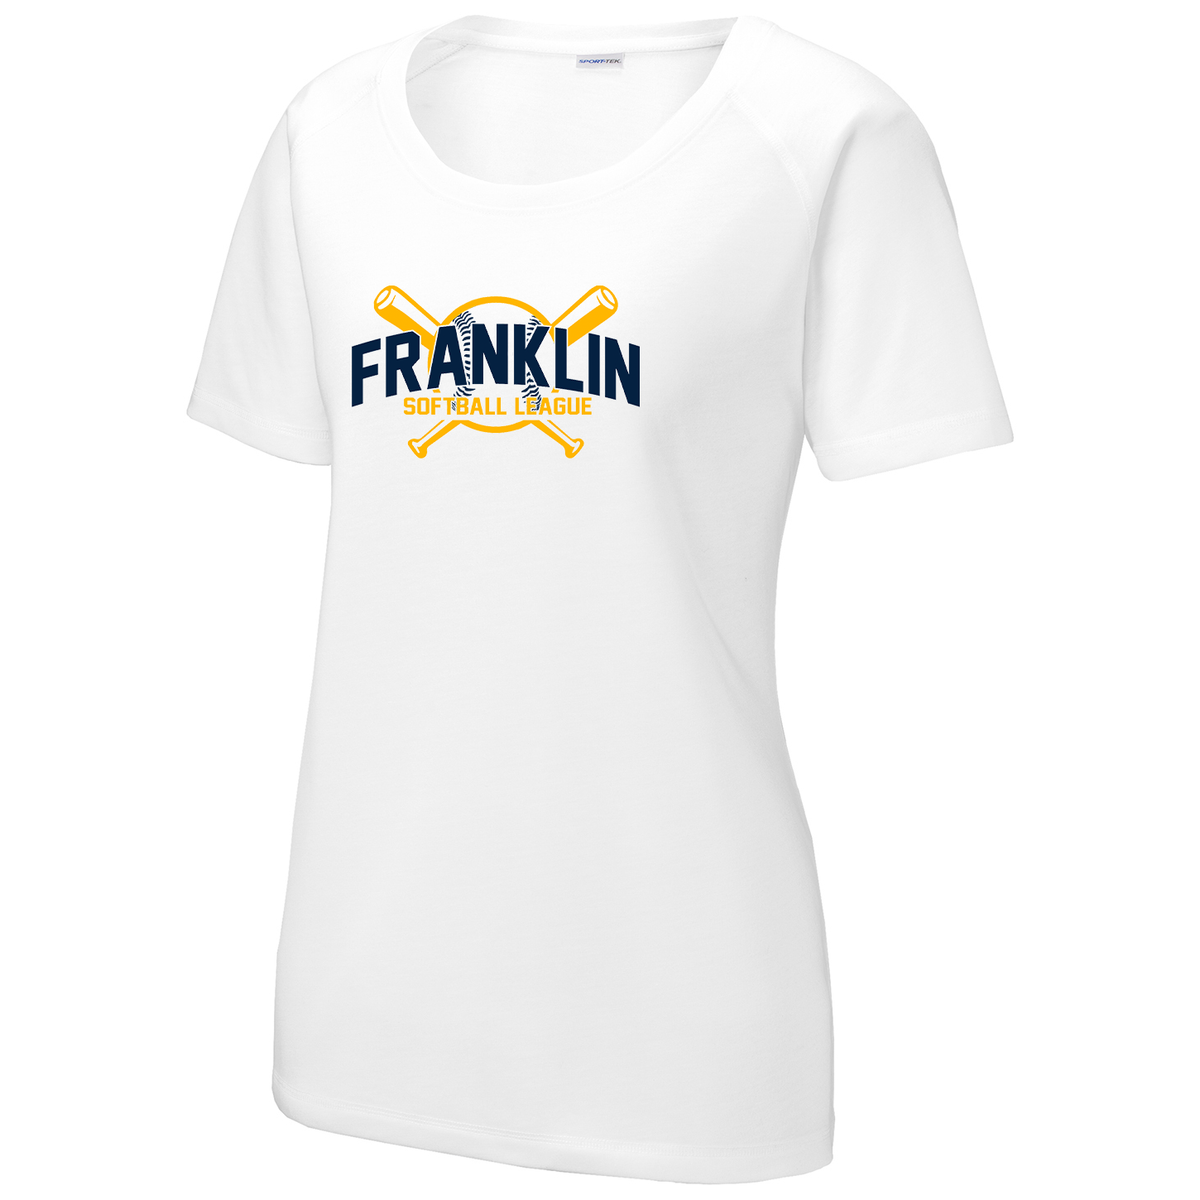 Franklin Township Softball League Women's Raglan CottonTouch